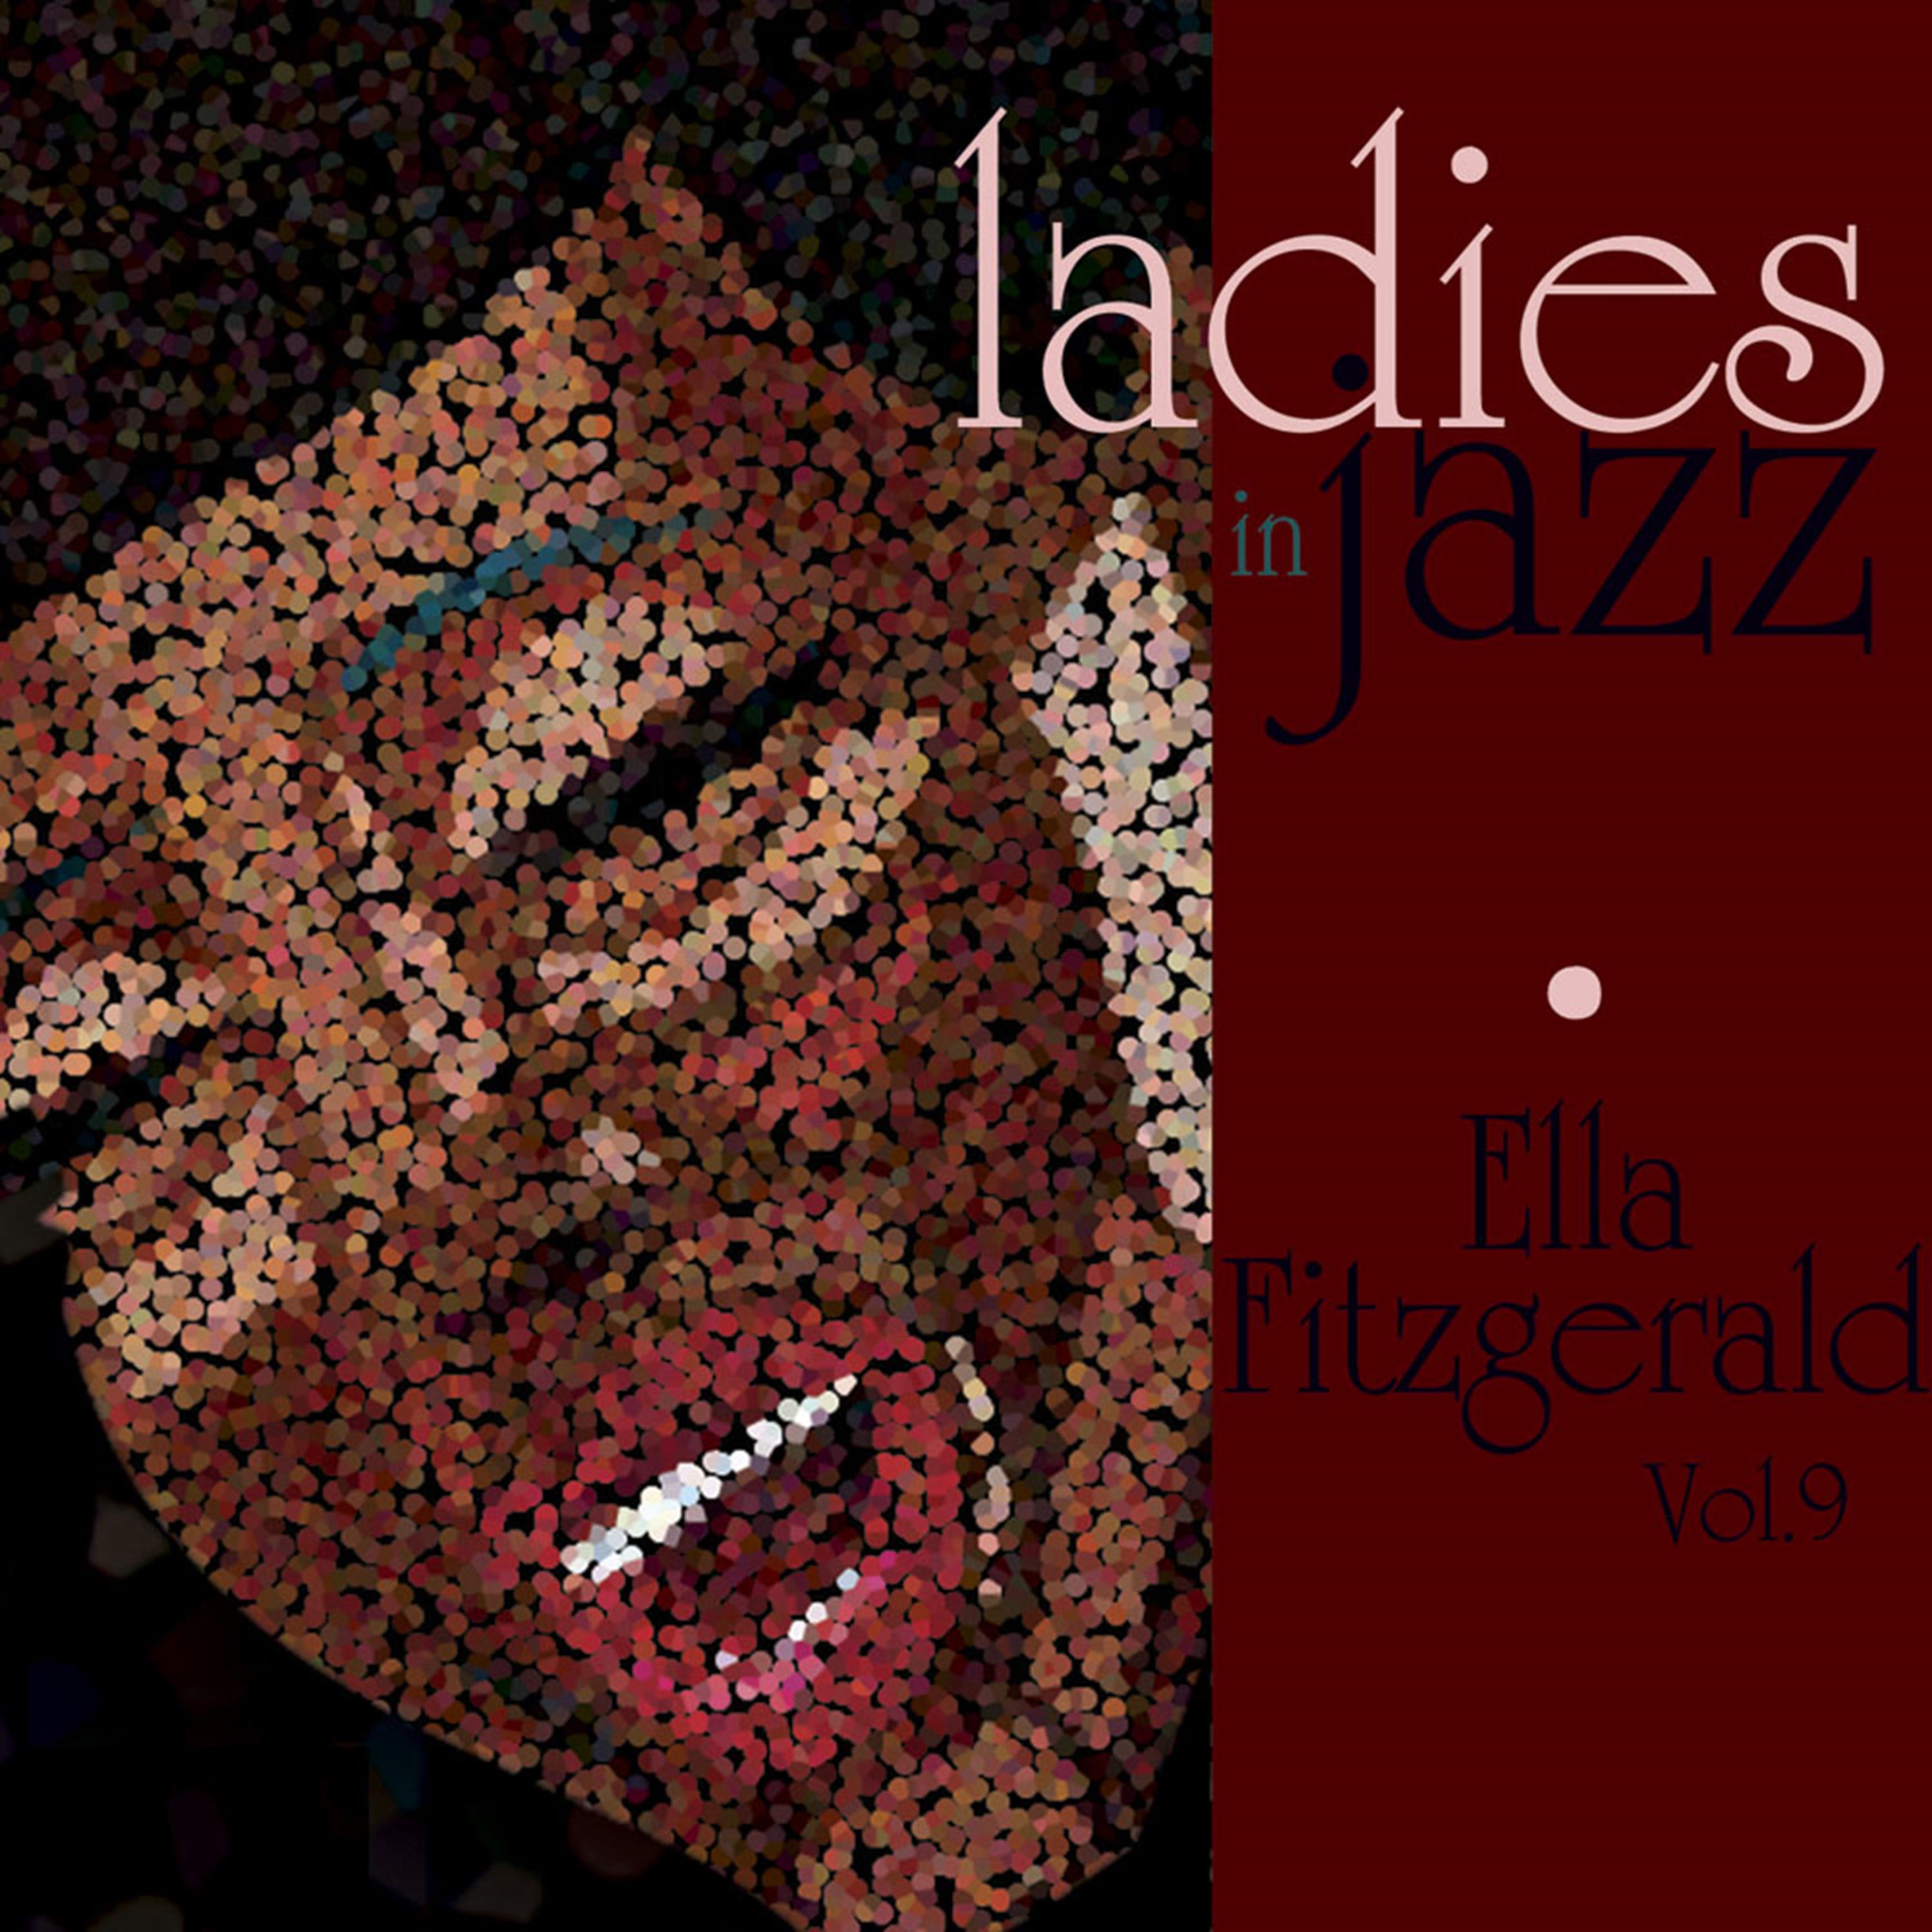 Ladies in Jazz - Ella Fitzgerald, Vol. 9